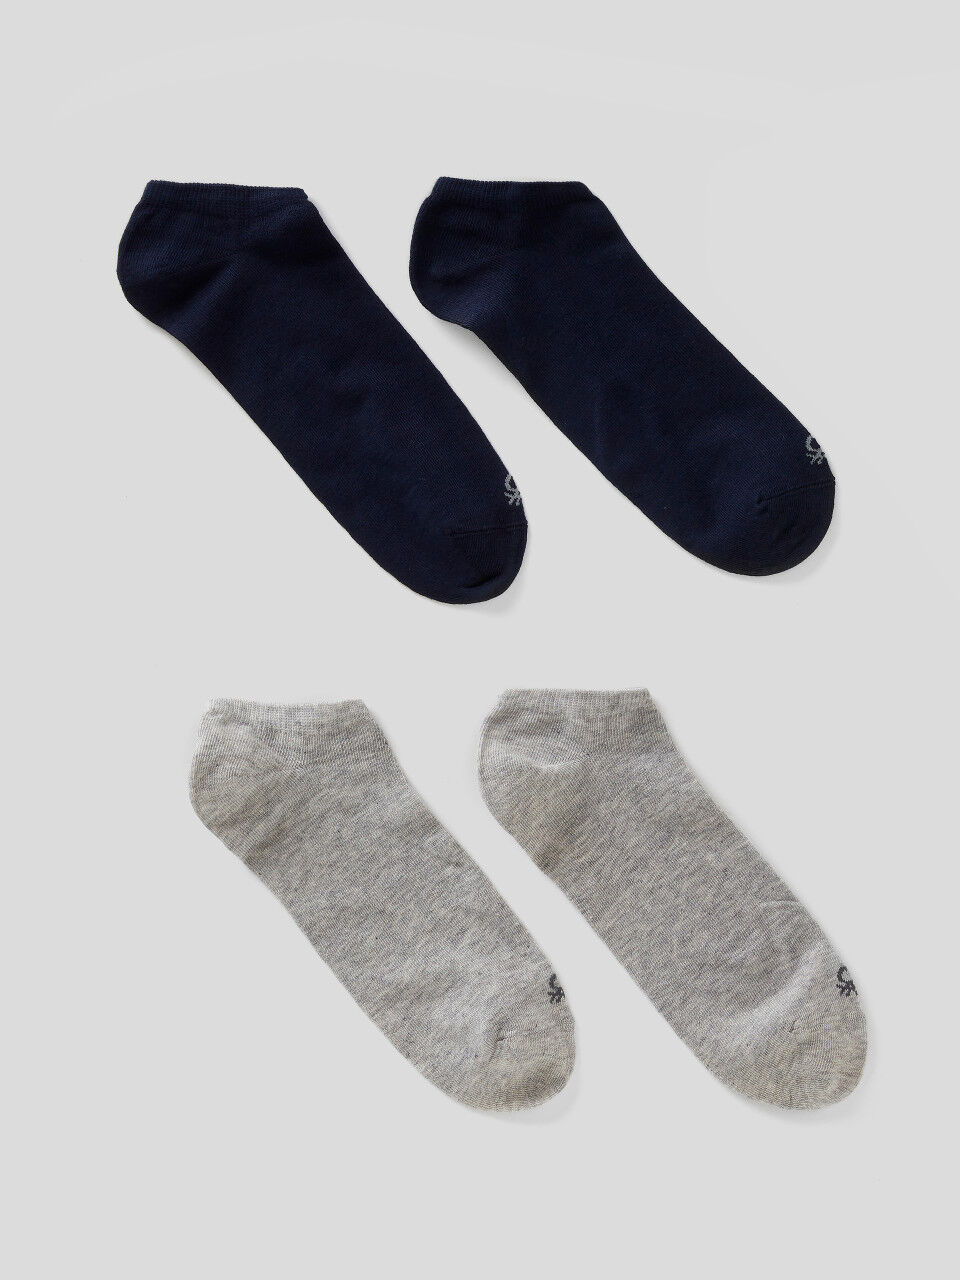 Quatro pares de meias curtas